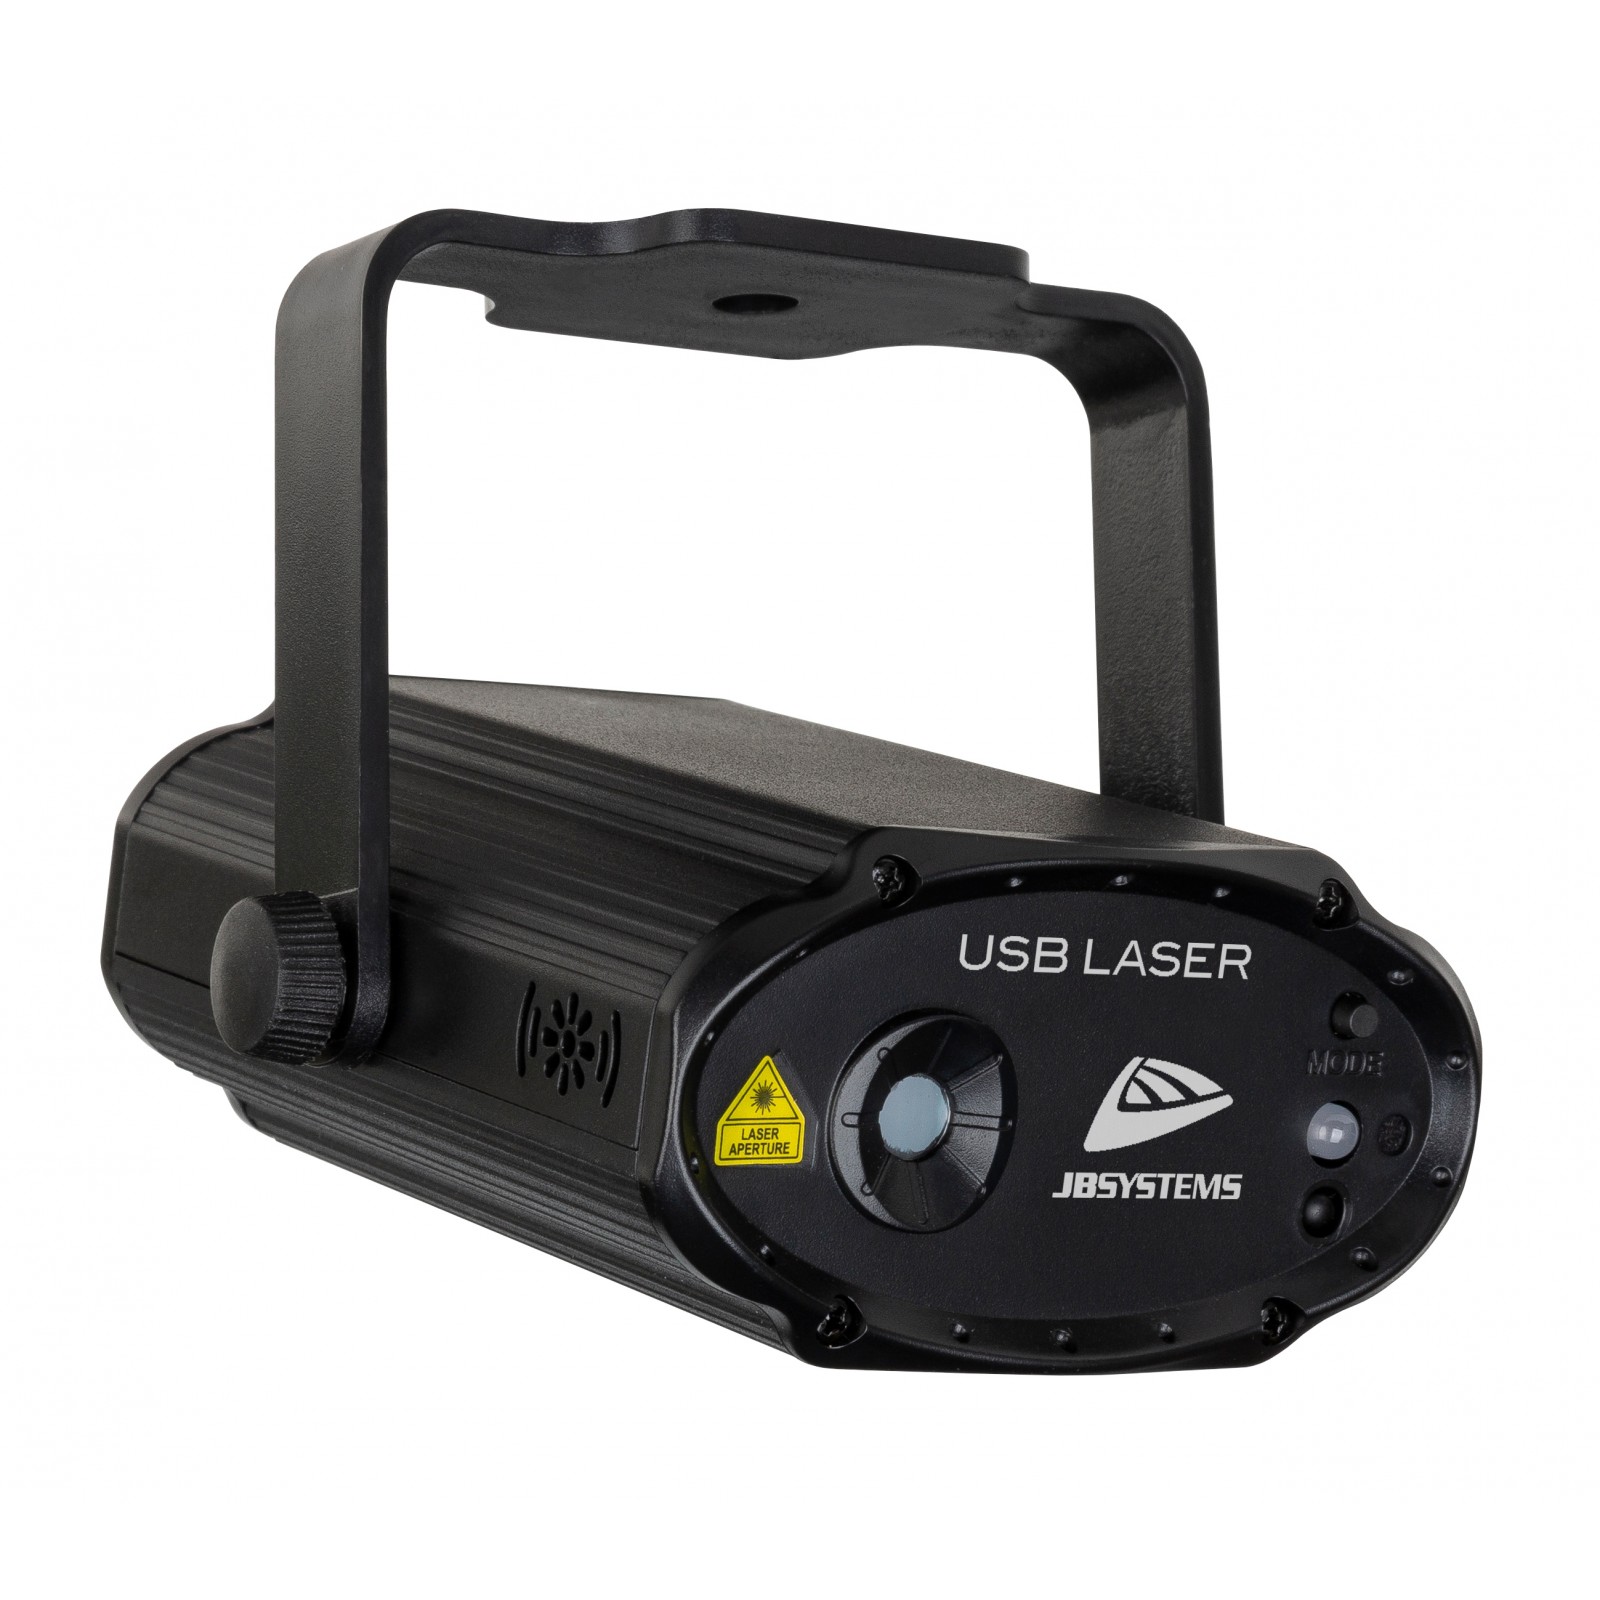 USB LASER, 5V USB laser effect red/green